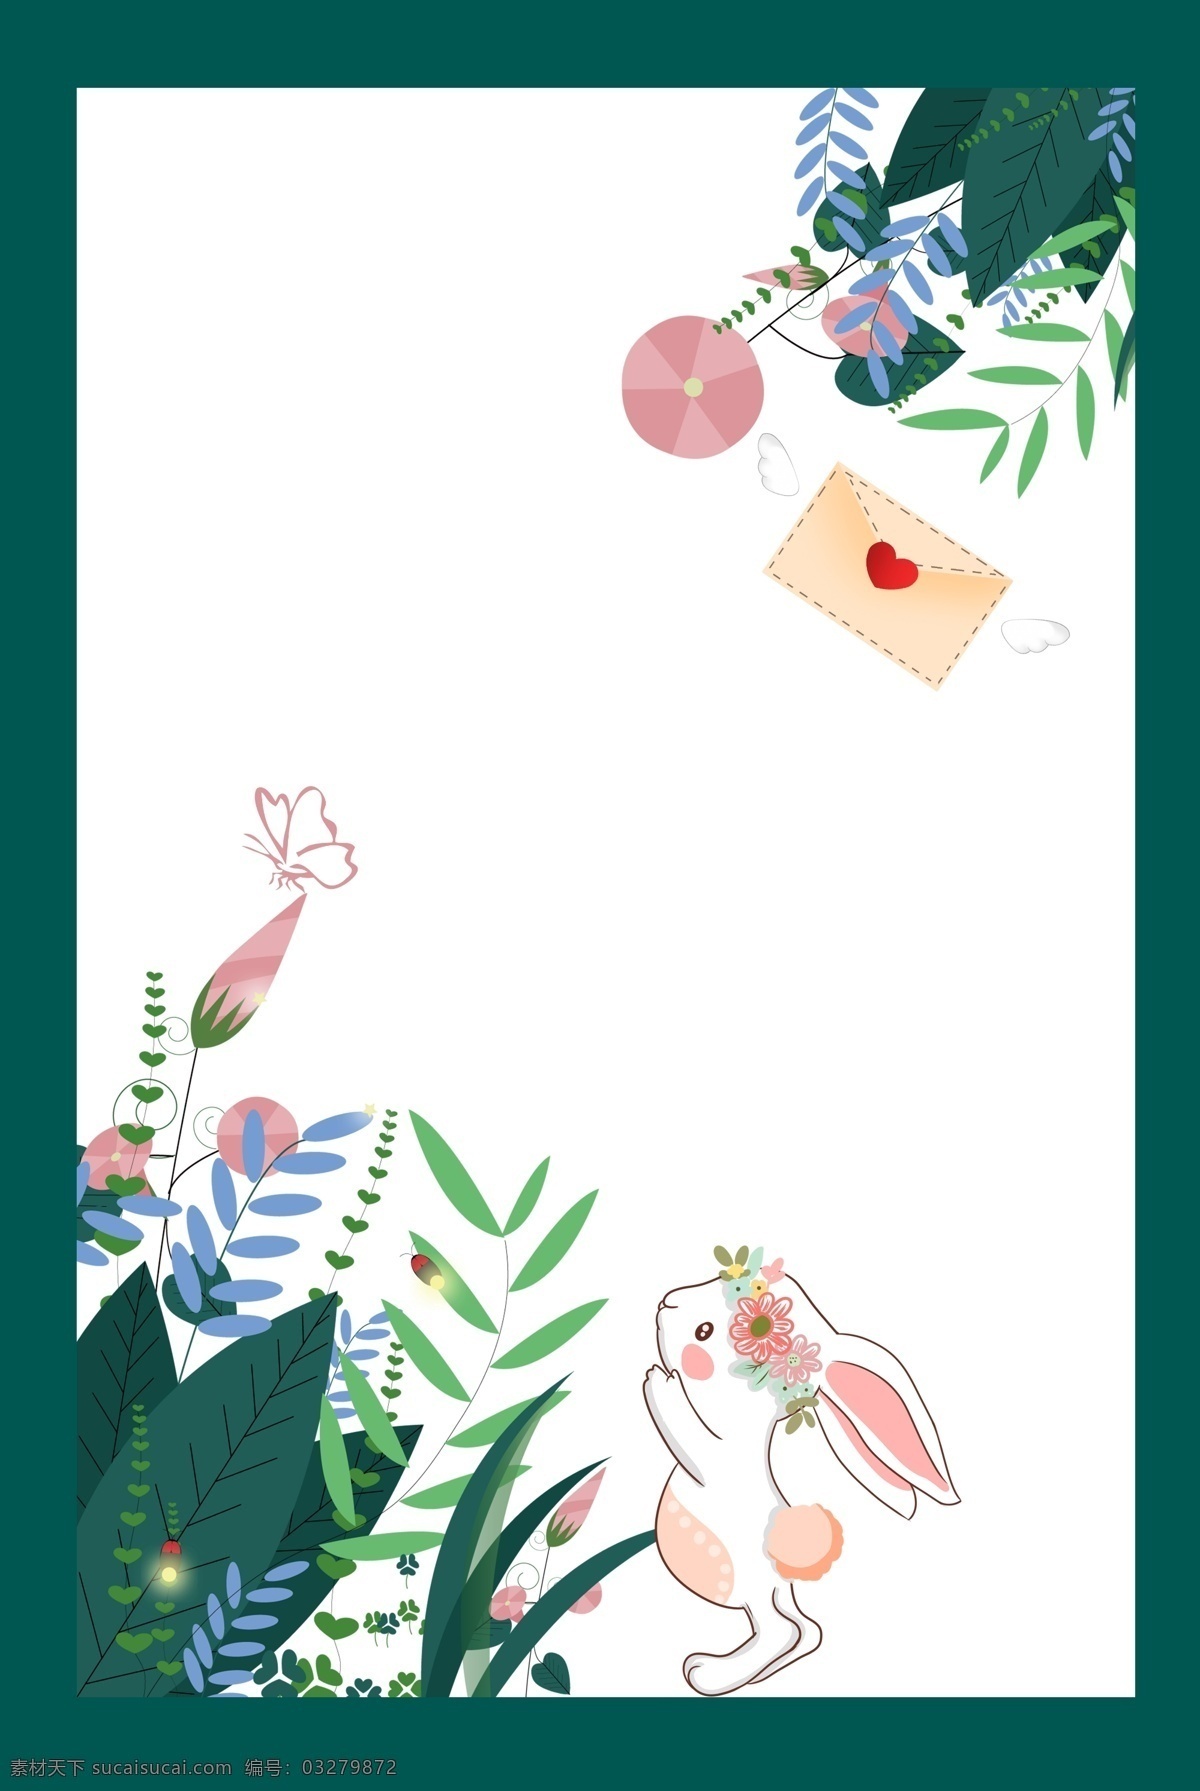 花卉 森林 兔子 蝴蝶 背景 海报 信件 花草 草丛 清新 文艺